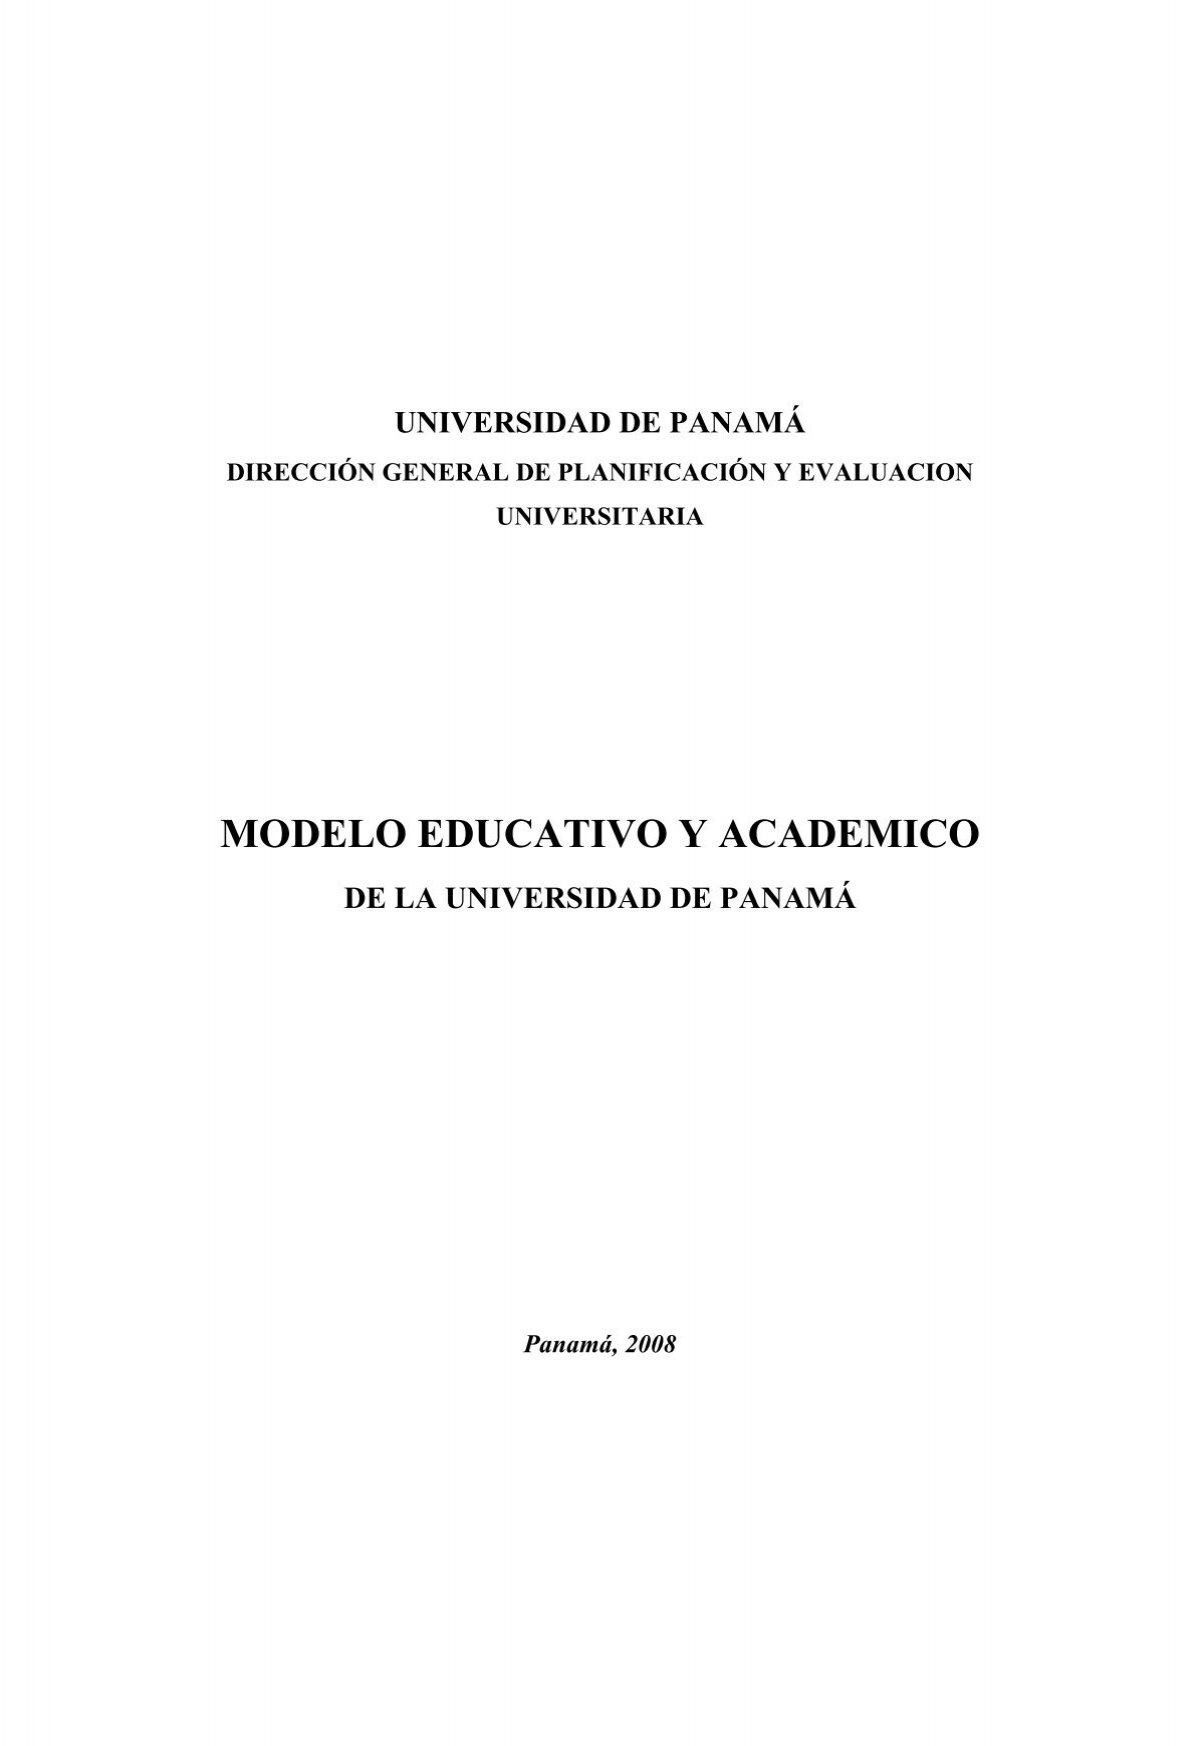 MODELO EDUCATIVO Y ACADEMICO - Universidad de PanamÃ¡